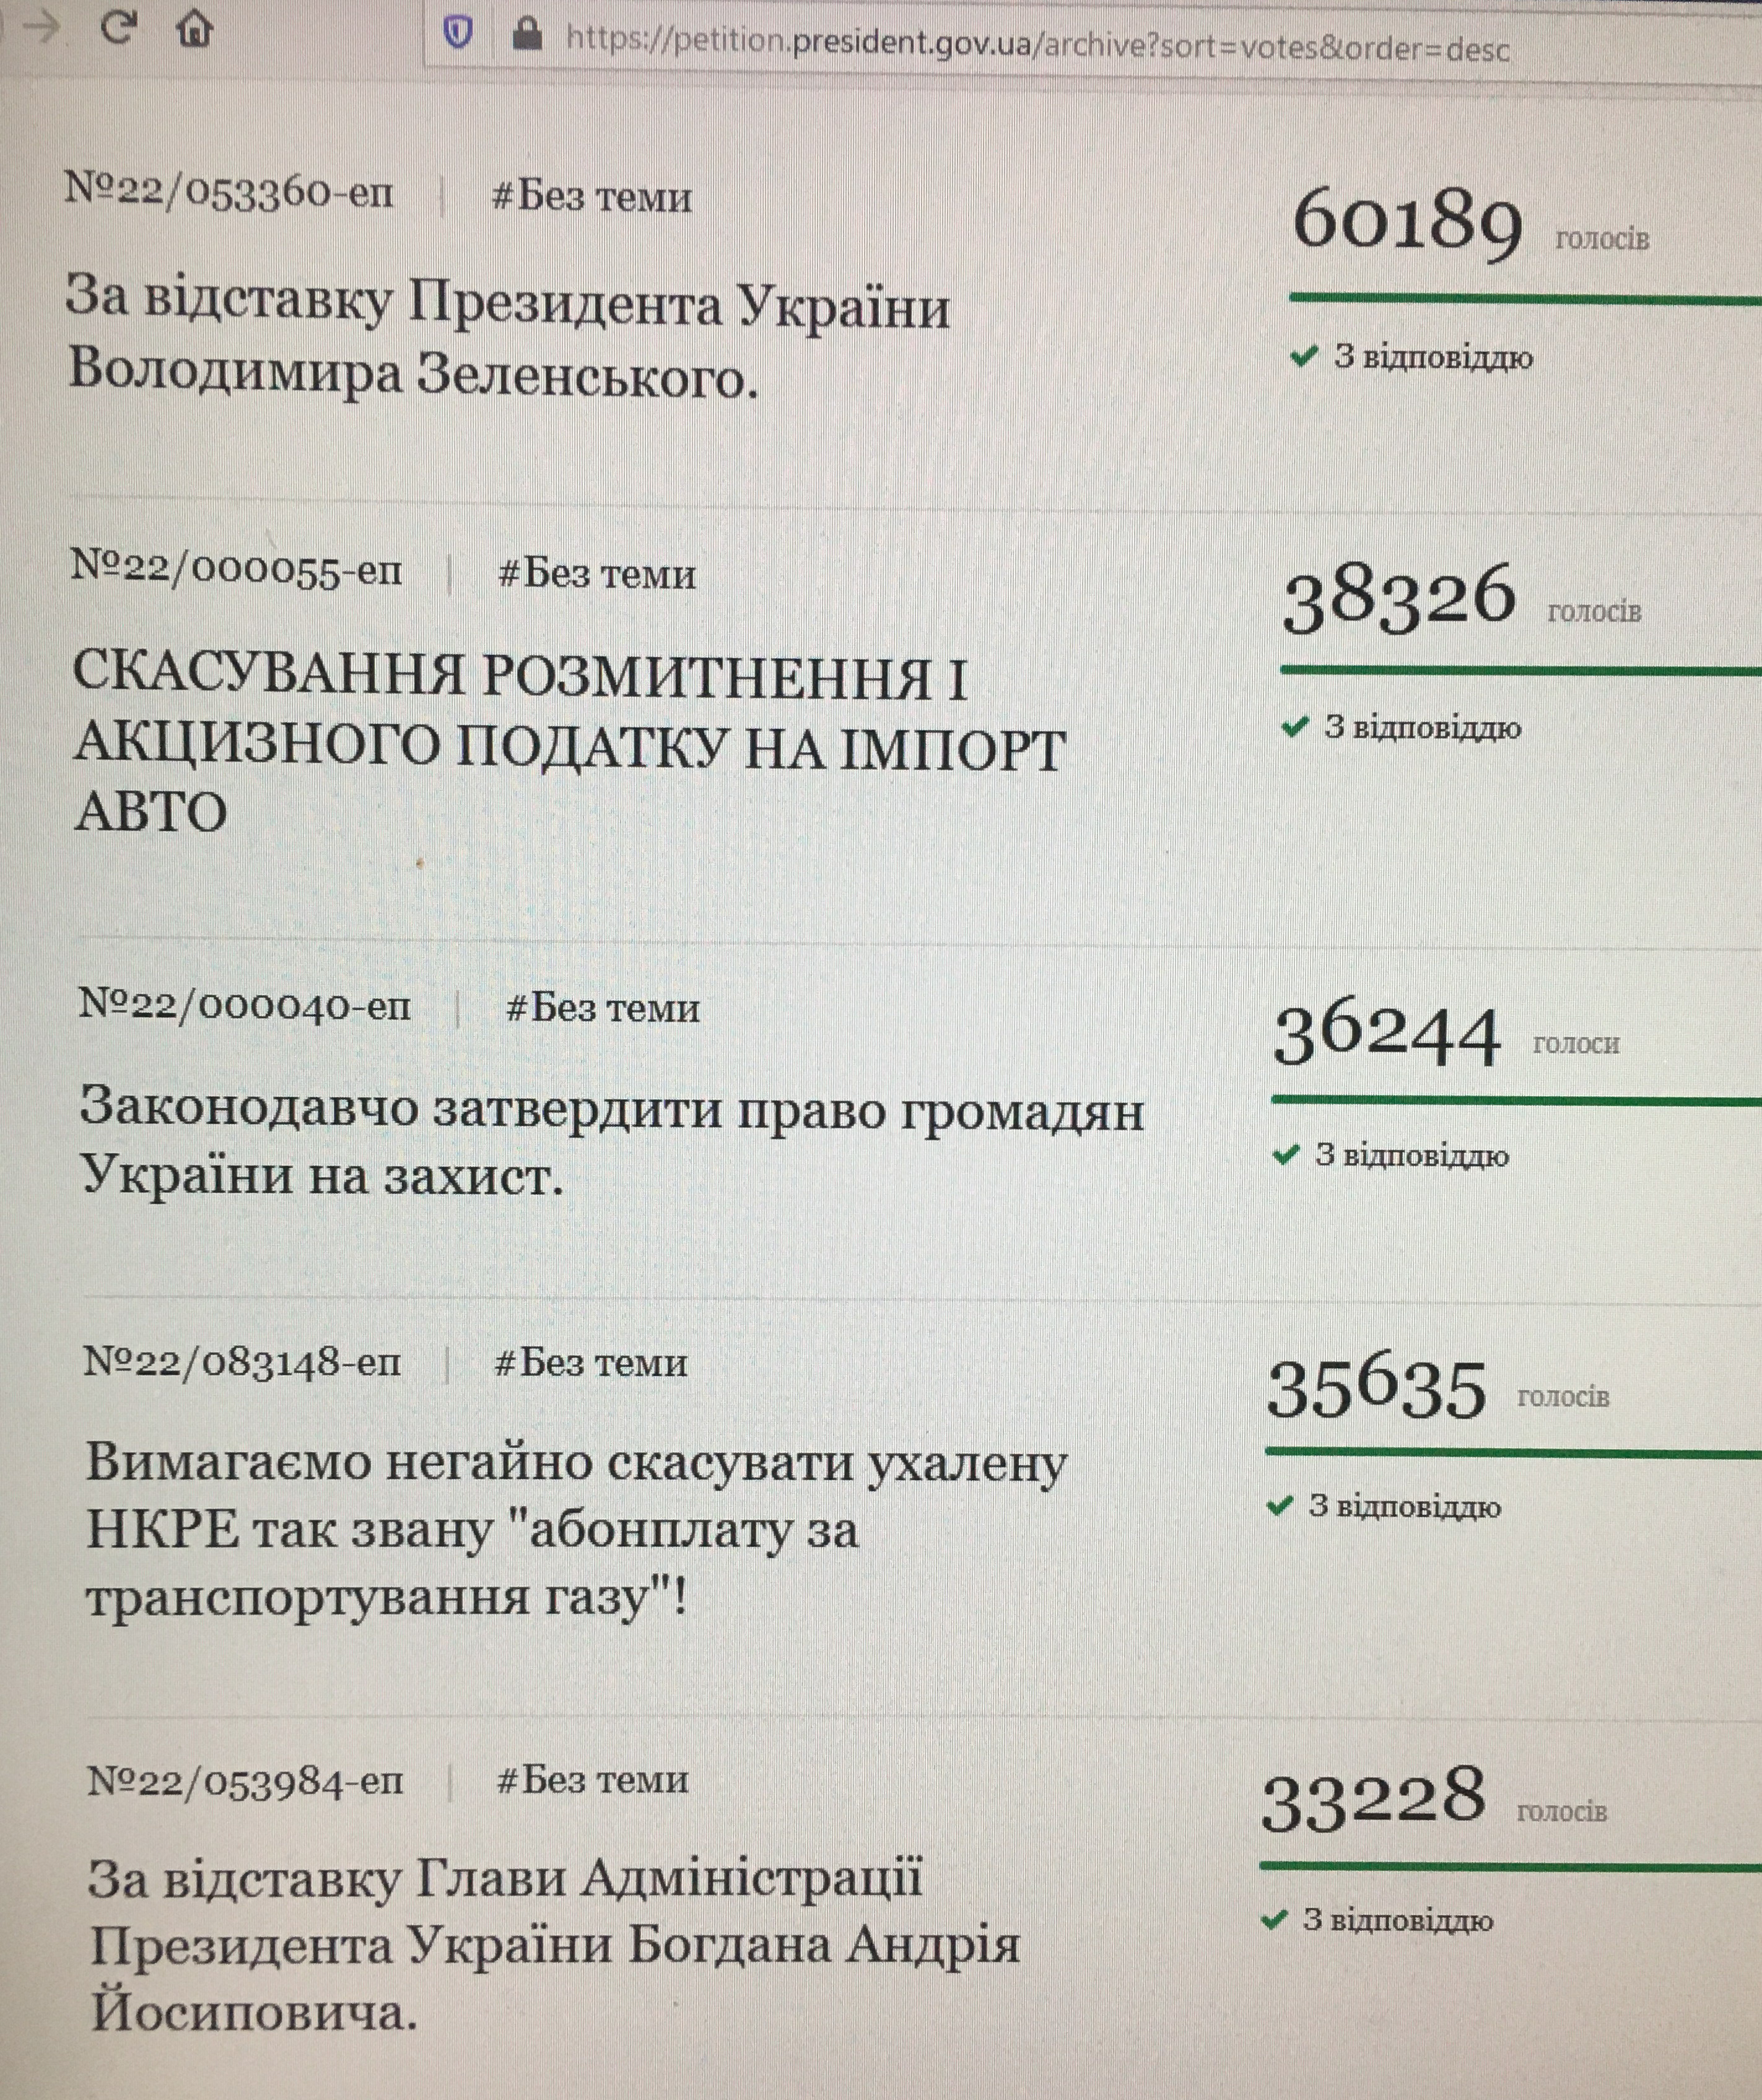 петиции президенту - давайте отстаивать права граждан Украины вместе